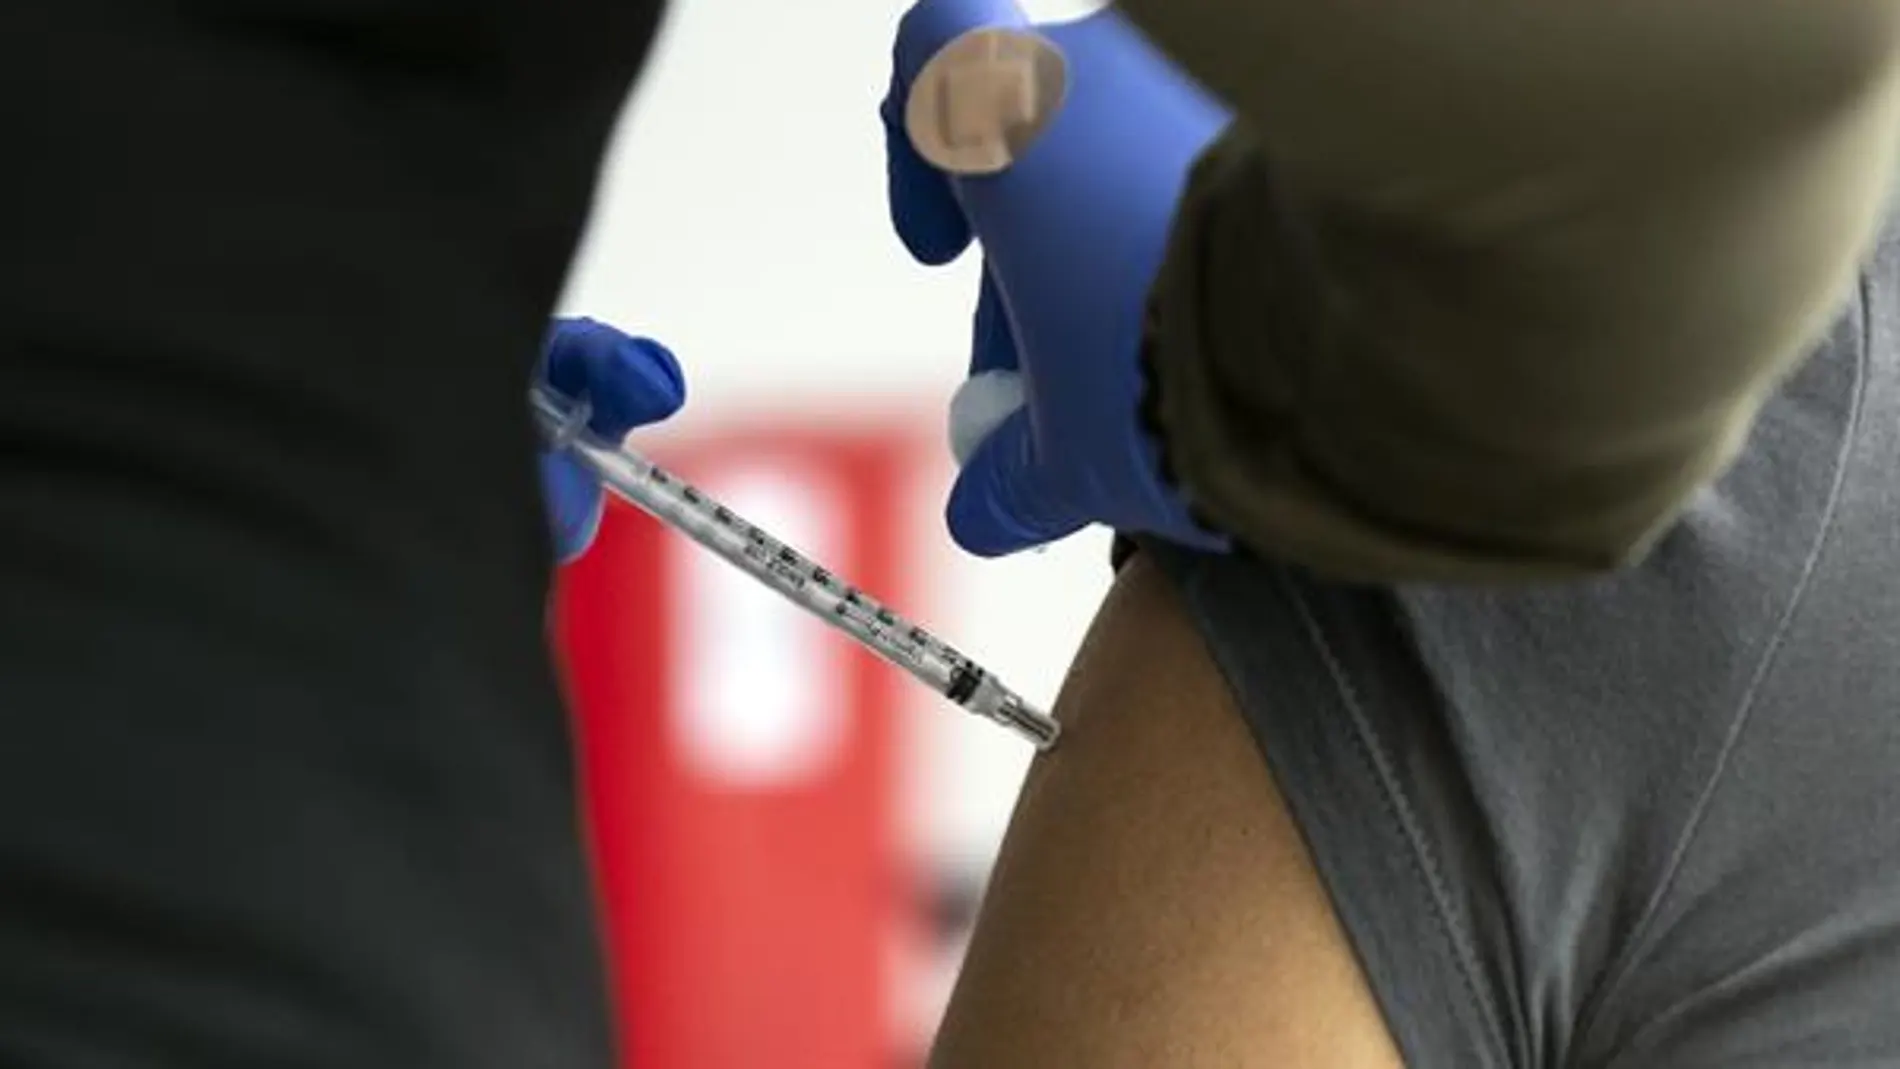 300 personas han fallecido tras la vacuna Covid-19, pero la mayoría tenían patologías previas